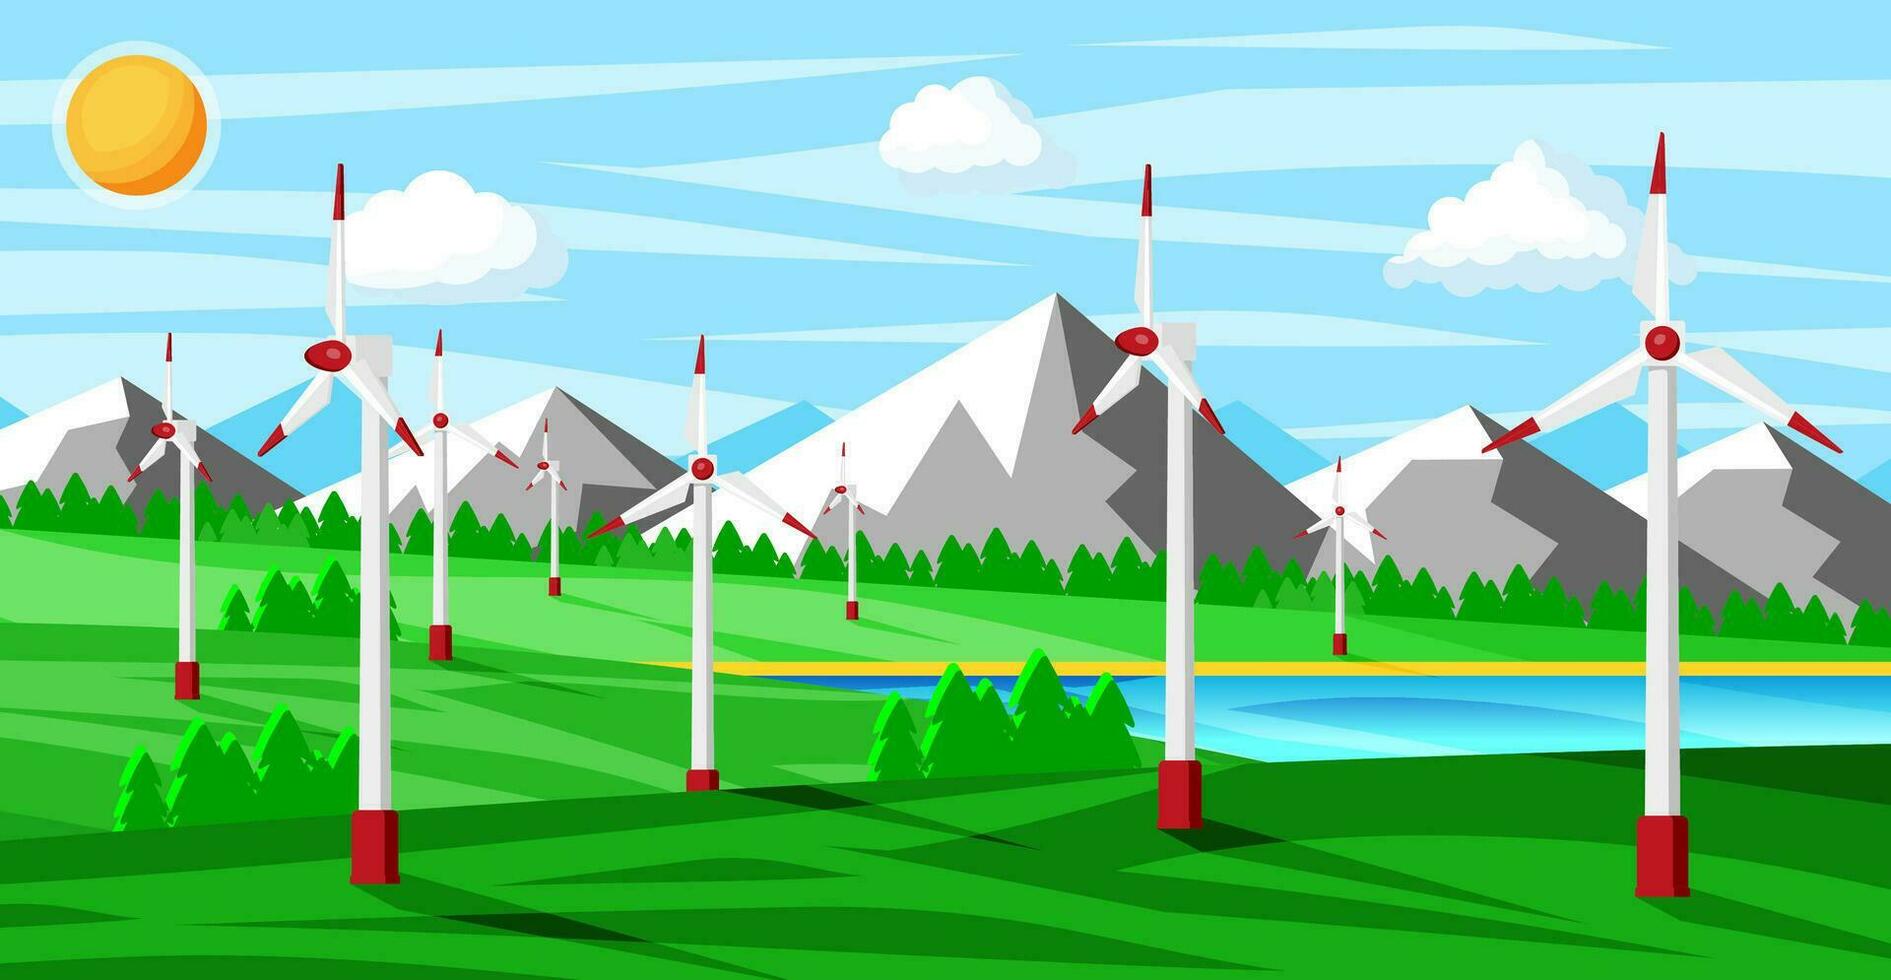 wind boerderij in groen velden tussen bomen. natuur landschap met modern windmolens. groen energie concept spandoek. ecologie alternatief energie bron technologie. vlak vector illustratie